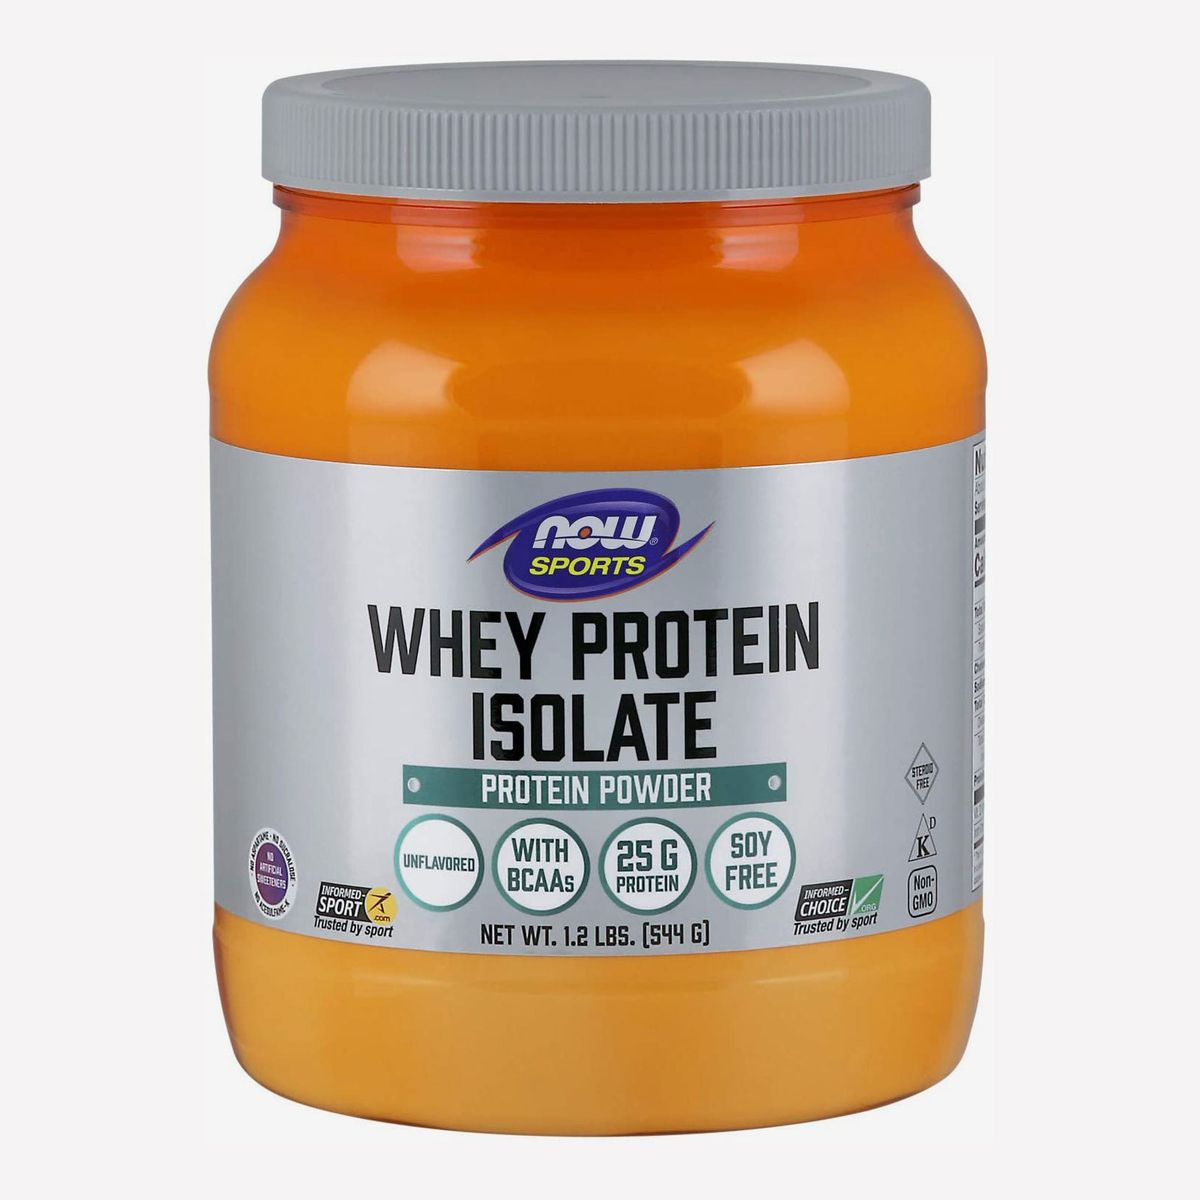 Healthy whey protein powder brands weiopec